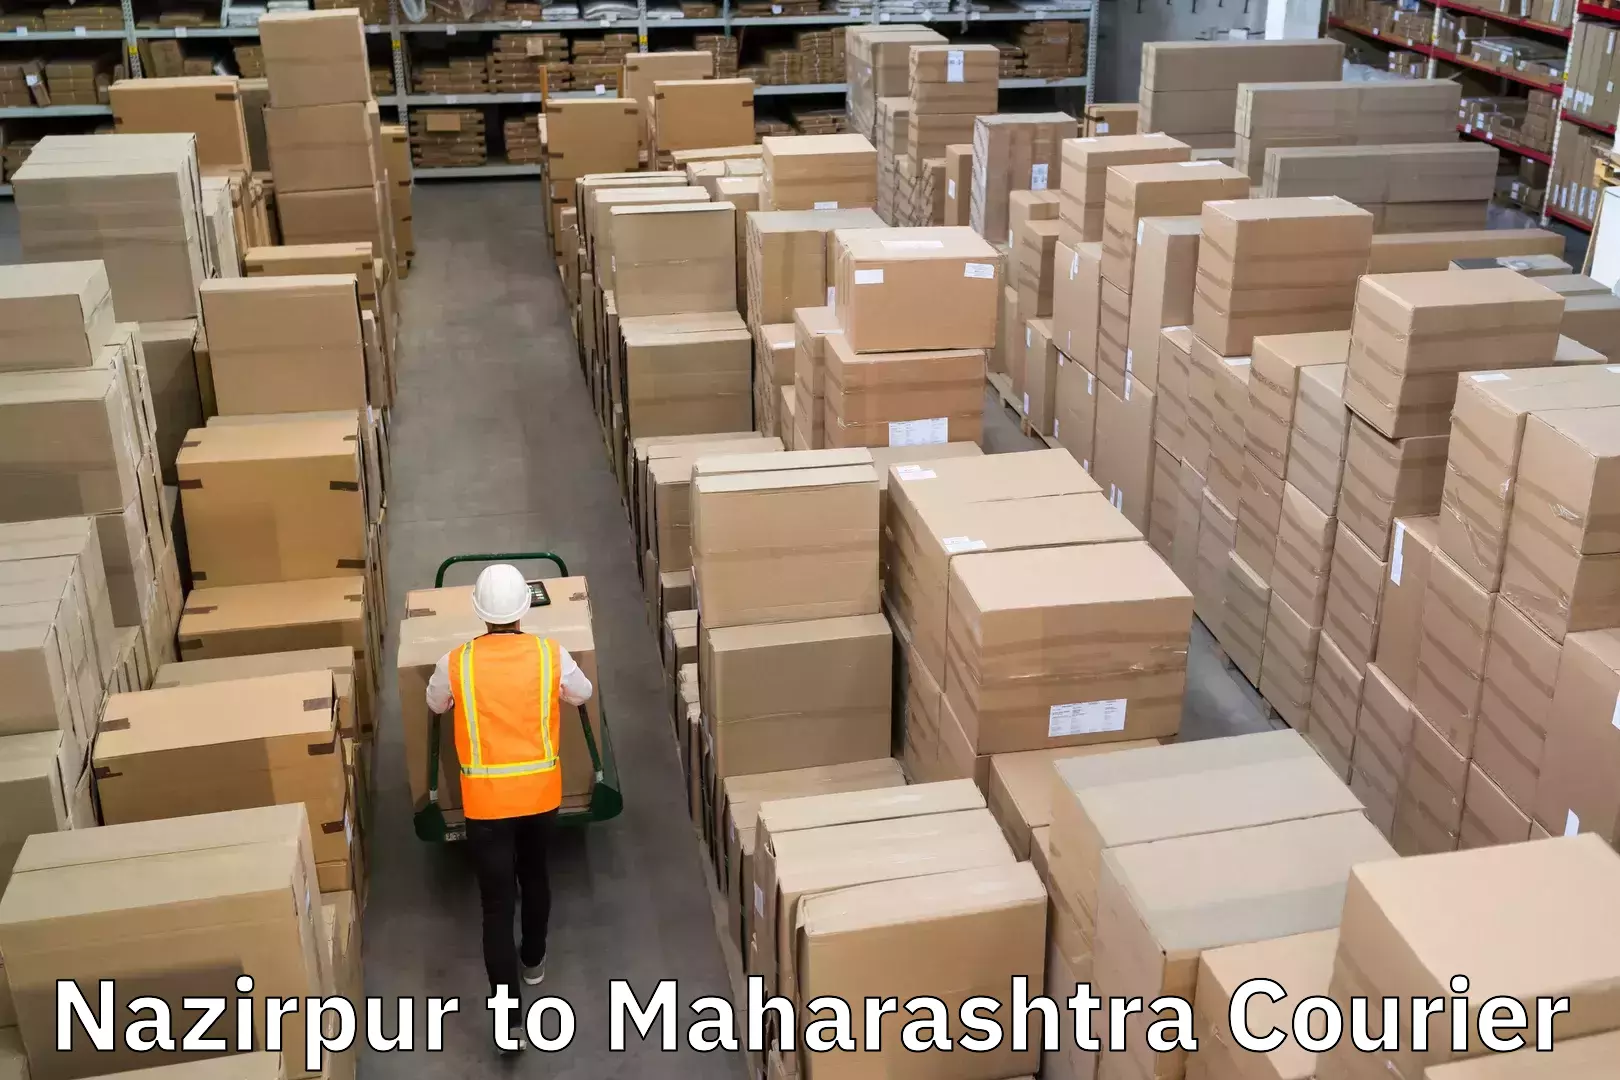 Digital courier platforms Nazirpur to Maharashtra